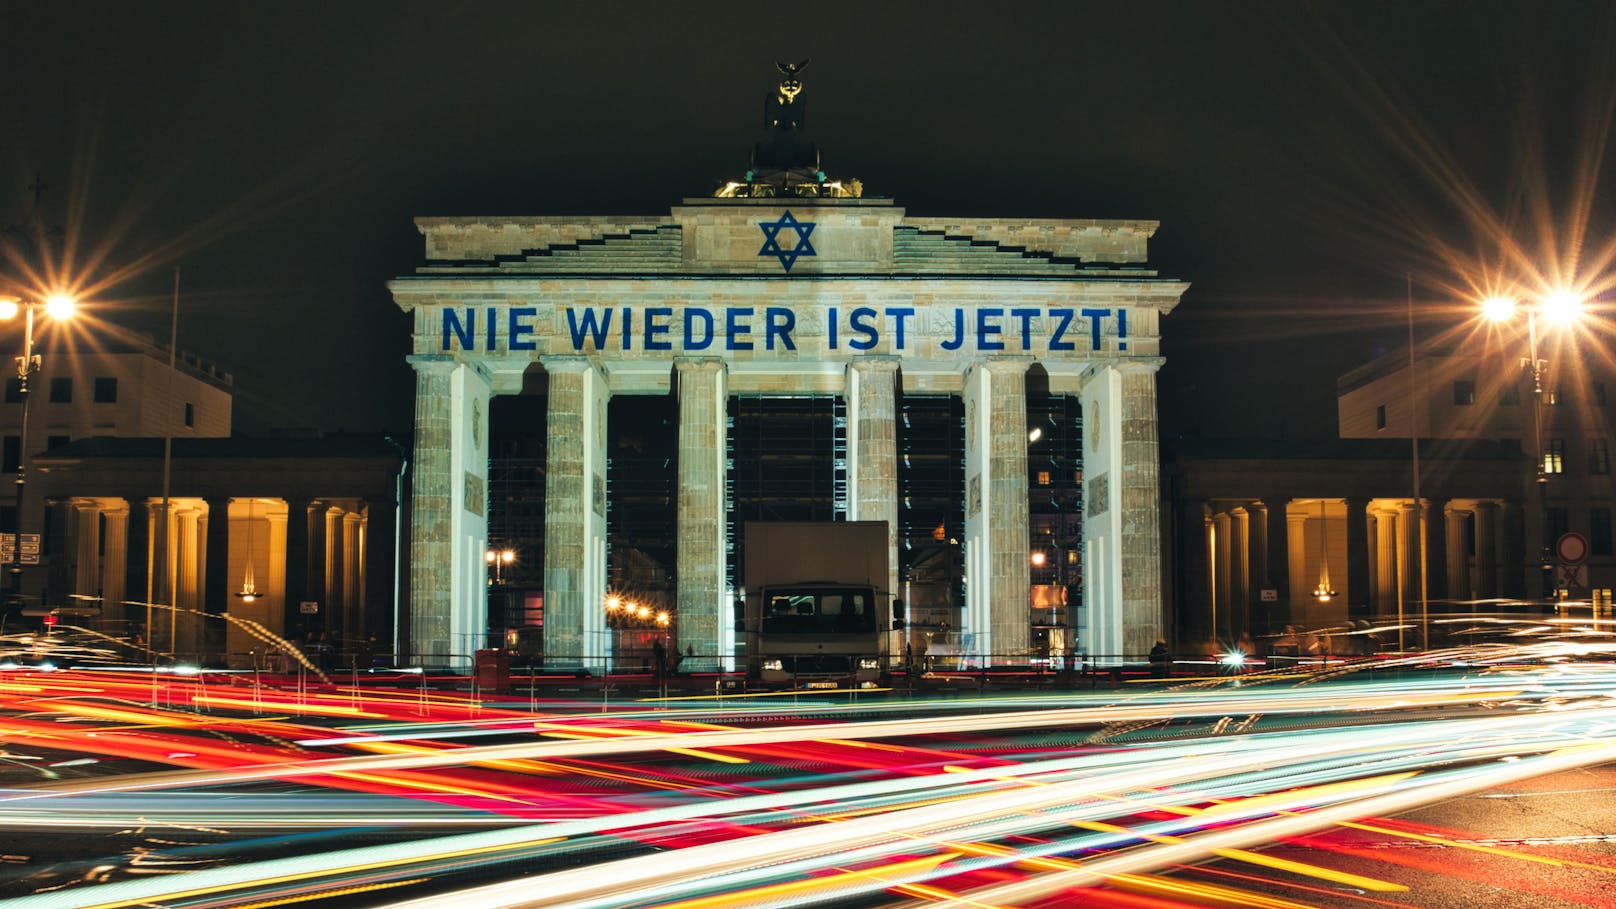 Auch in Berlin lautete das Motto kürzlich "Nie wieder ist jetzt".